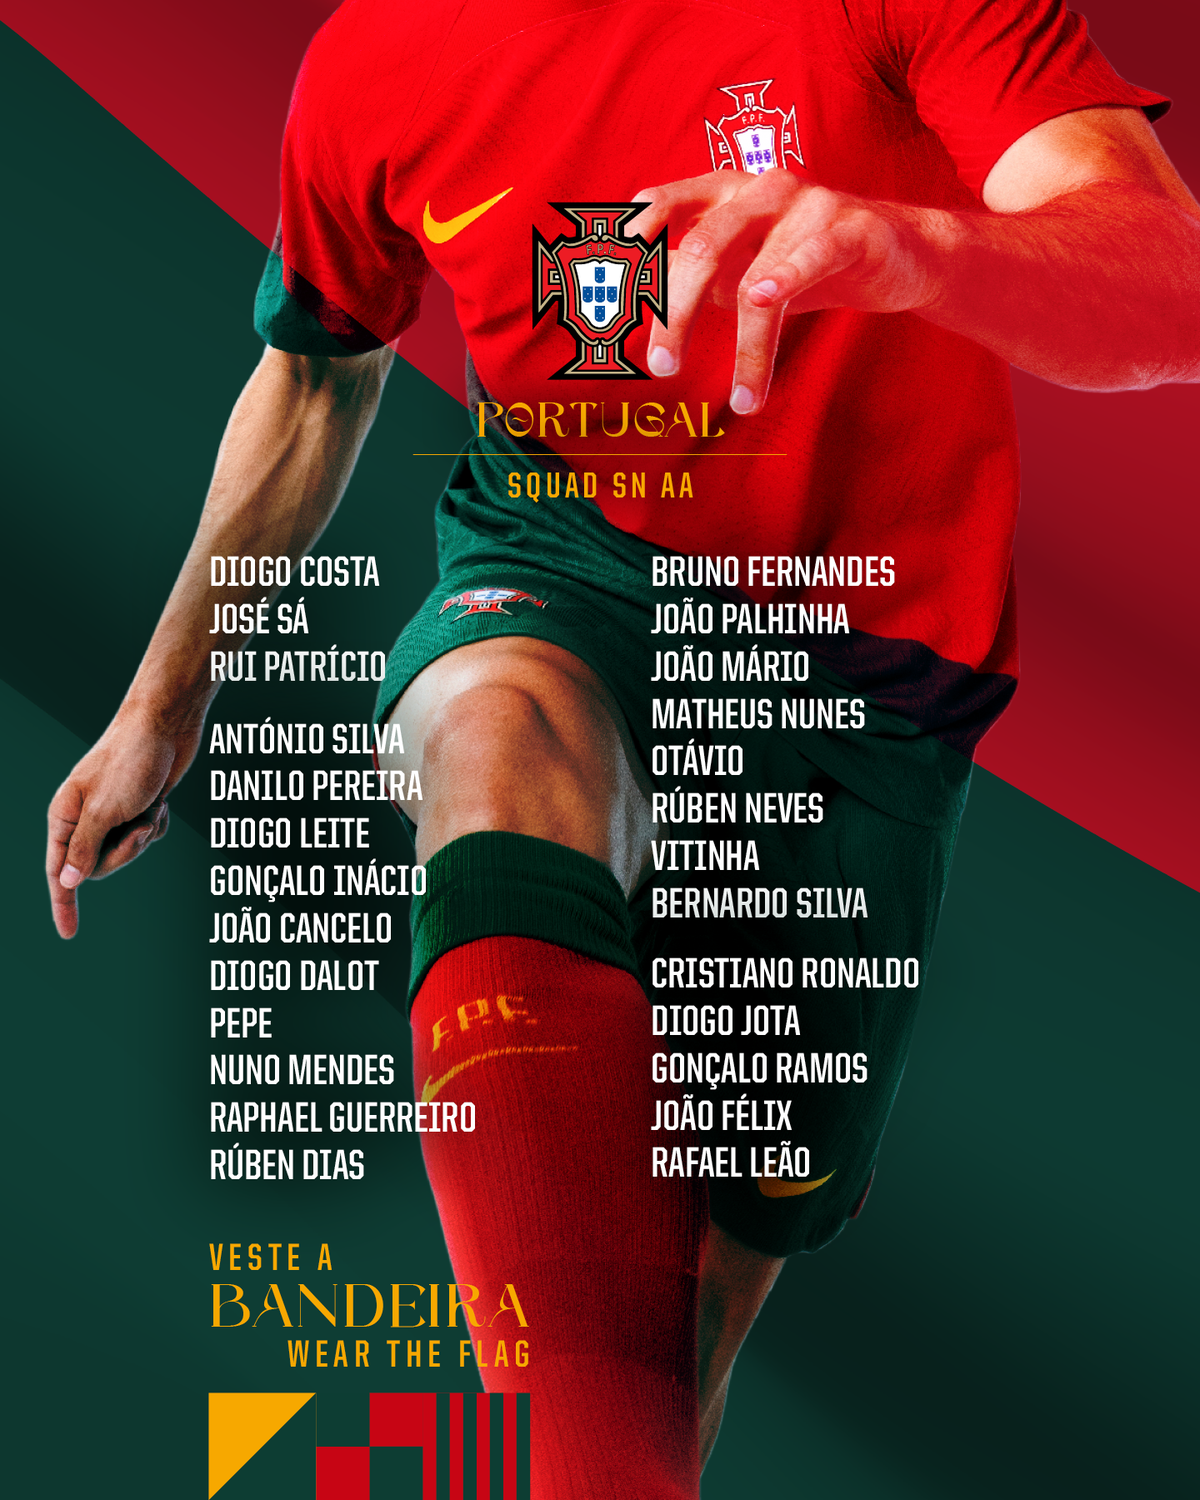 Ronaldo vẫn được trao quyền lực ở tuyển Bồ Đào Nha - ảnh 2